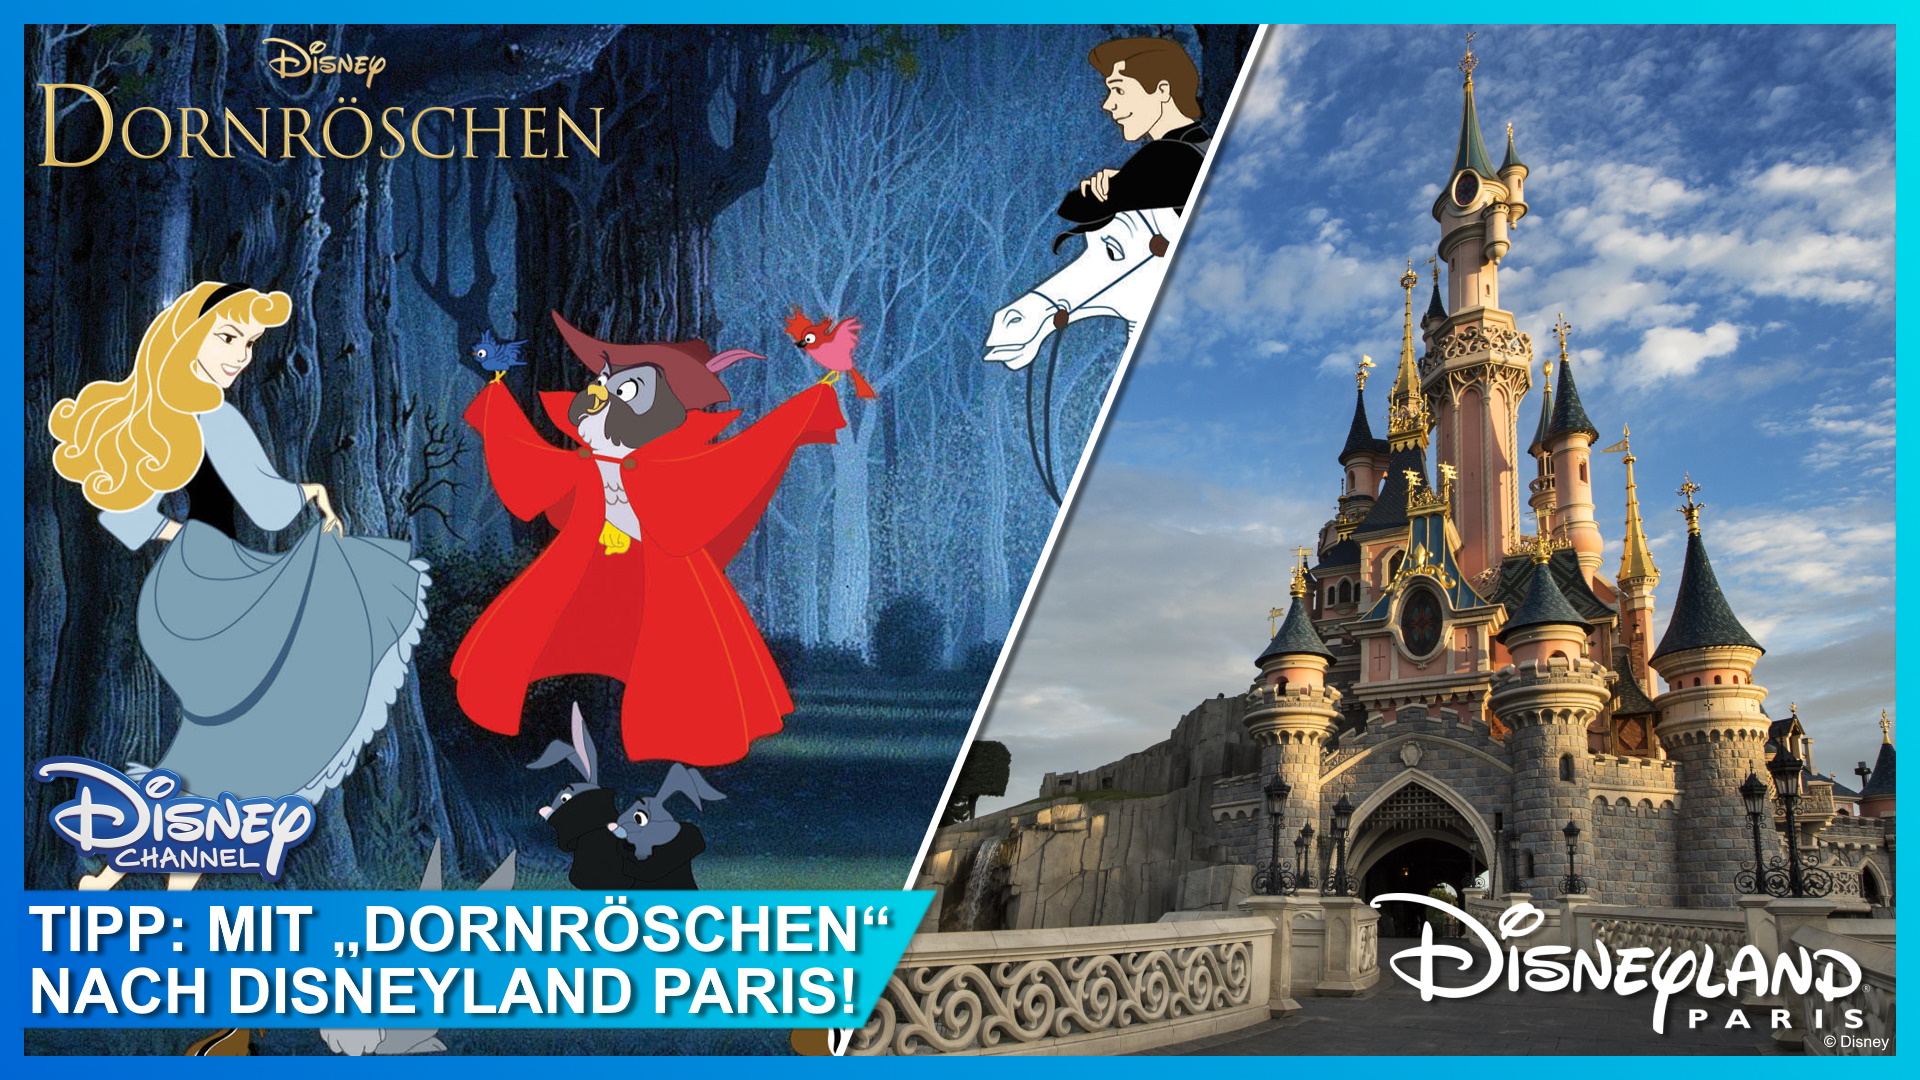 Disneyland Paris Gewinnspiel mit Dornröschen